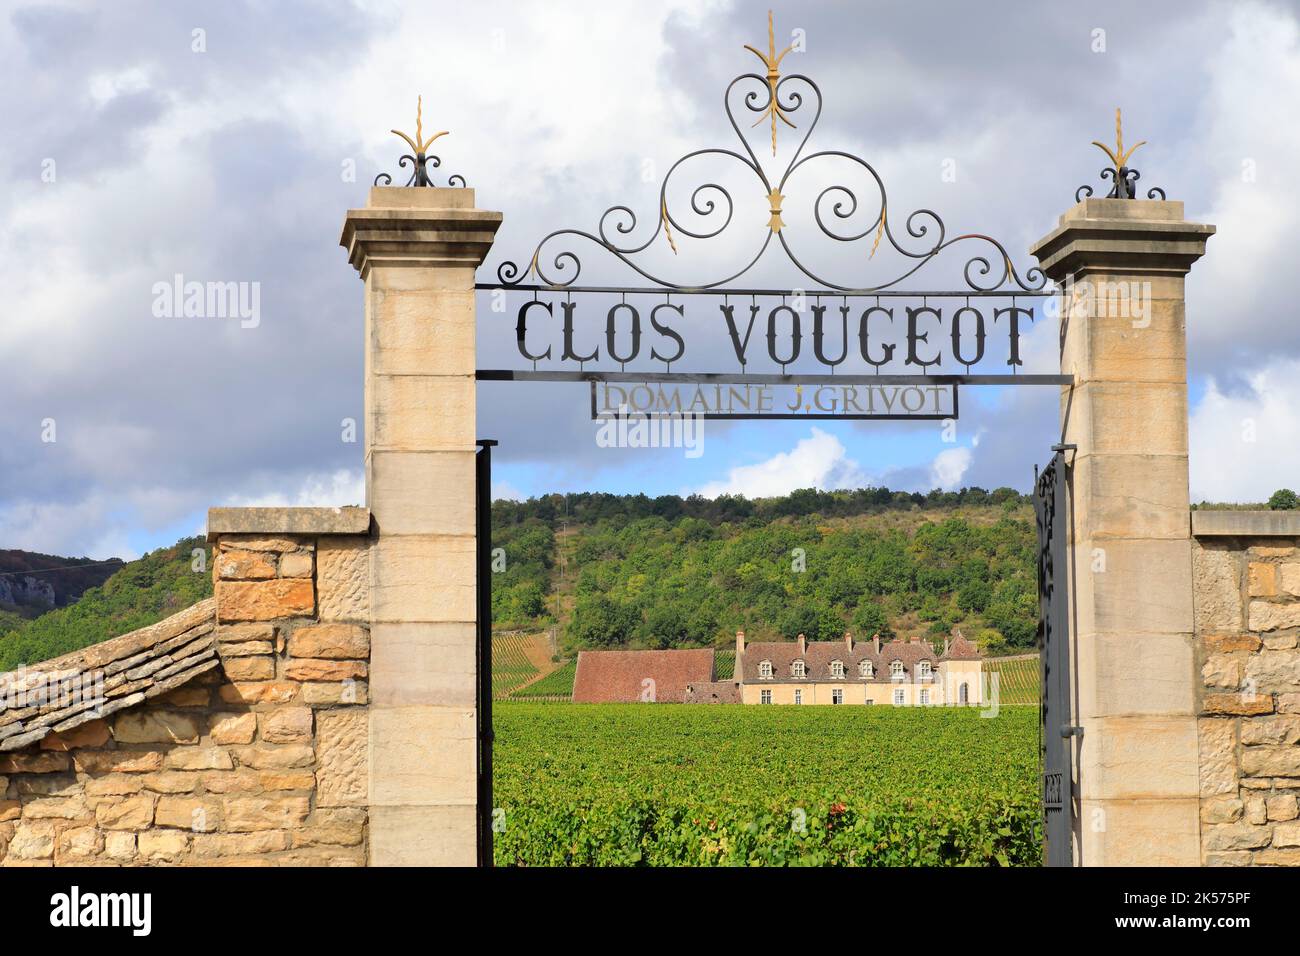 Francia, Cote d'Or, Cote de Nuits, Route des Grands Crus, i climi di Borgogna elencati come Patrimonio Mondiale dall'UNESCO, Vougeot, Clos Vougeot, vigneti di Domaine J. Grivot con il castello di Clos de Vougeot sullo sfondo (12th-16th ° secolo) Foto Stock